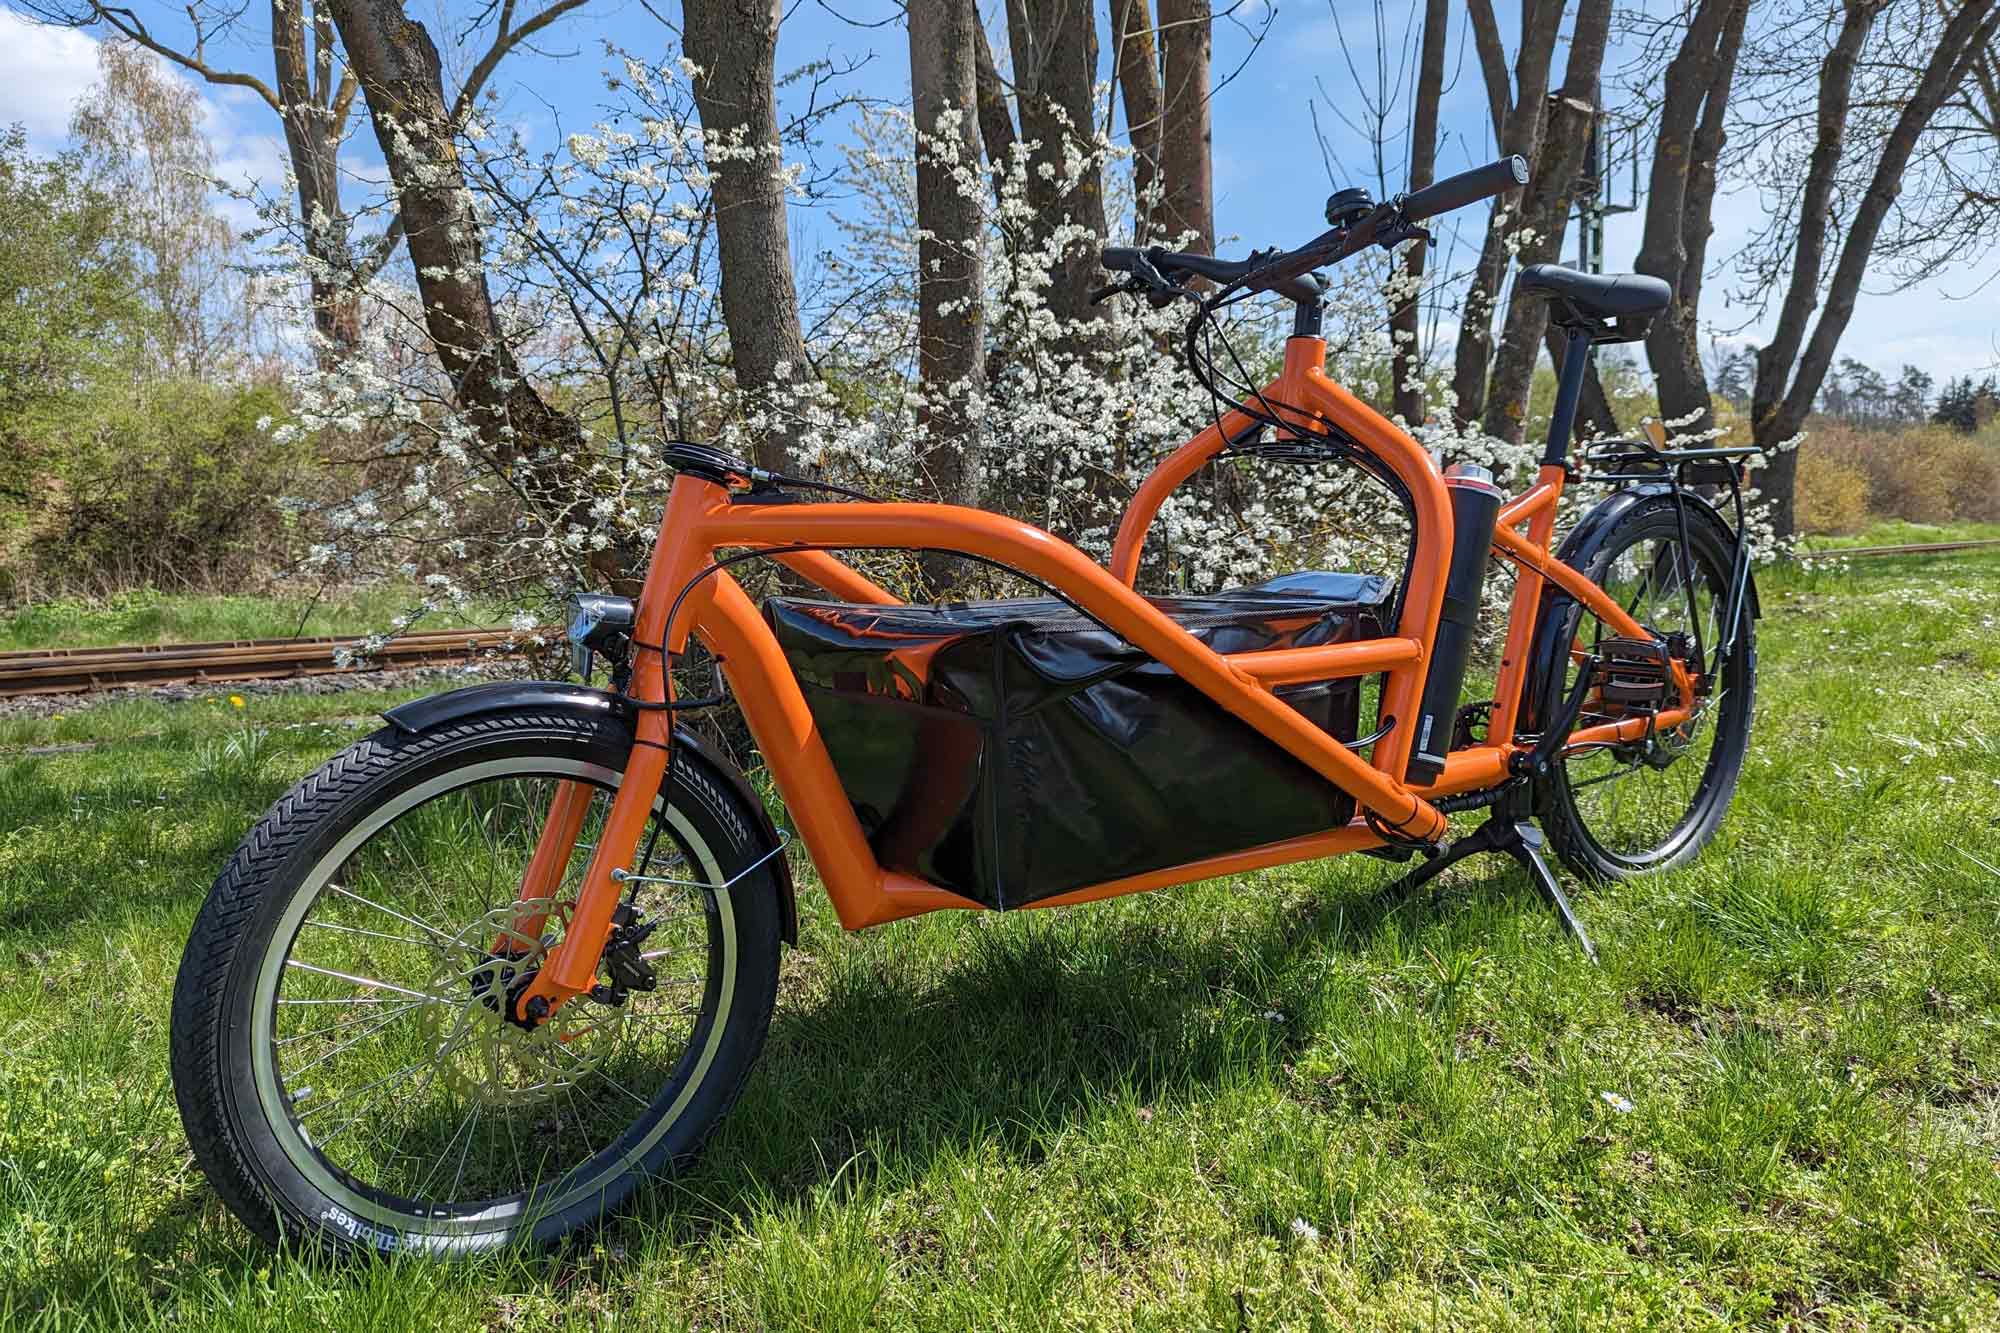 Vsc finn cargo bike in the wild